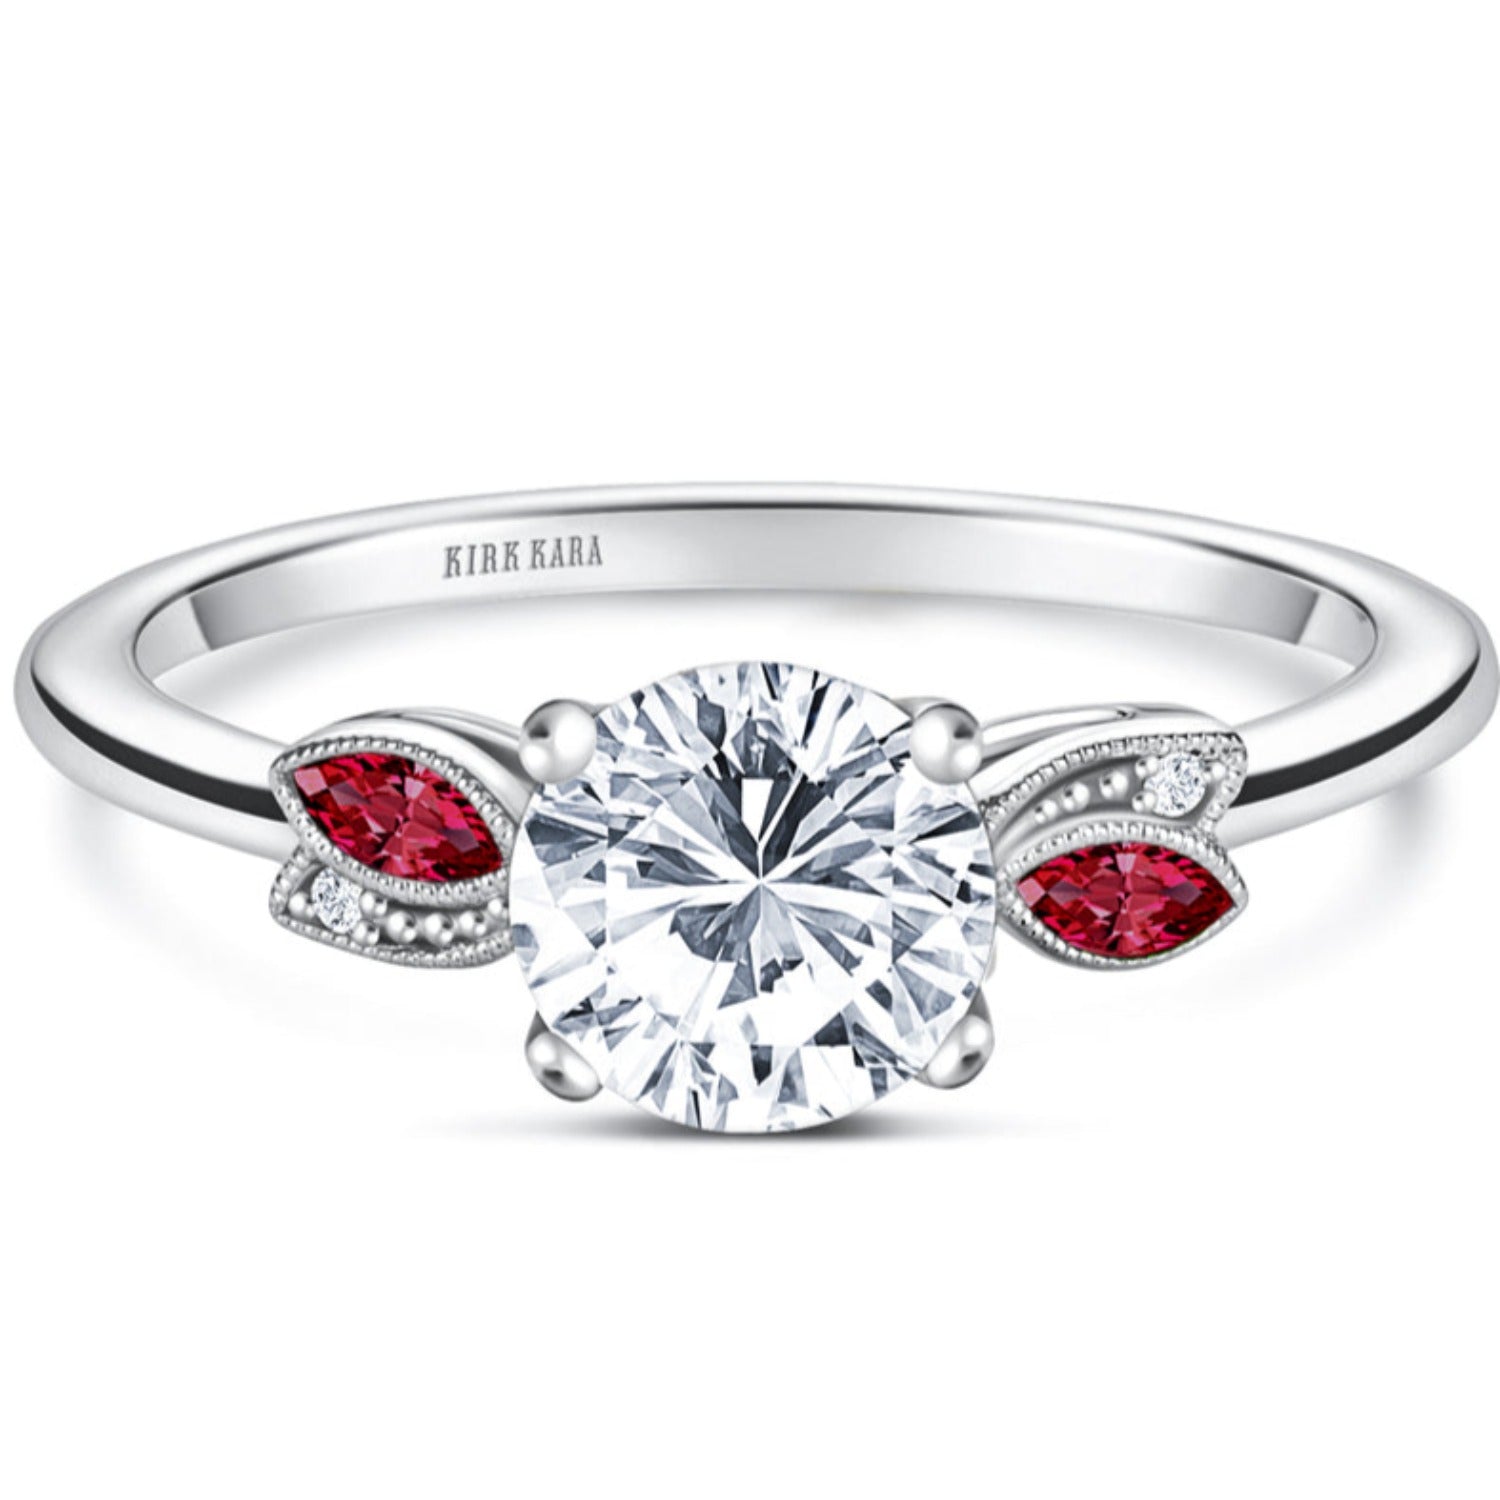 人気沸騰ブラドン 【lily & co.】Red Marron Diamond Ring リング